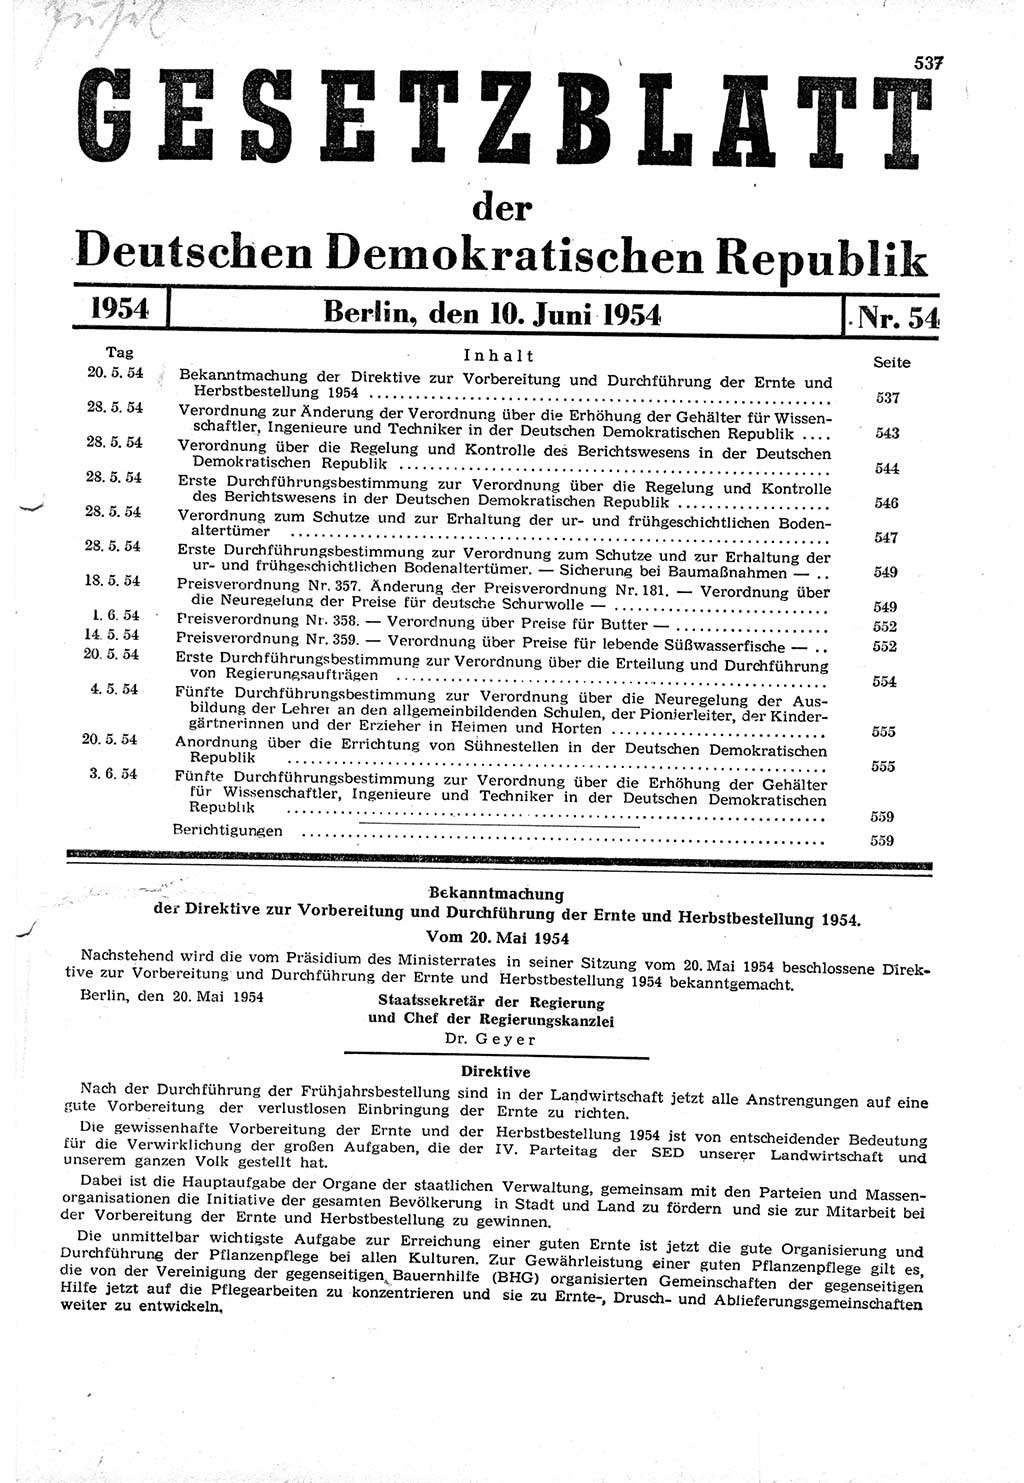 Gesetzblatt (GBl.) der Deutschen Demokratischen Republik (DDR) 1954, Seite 537 (GBl. DDR 1954, S. 537)